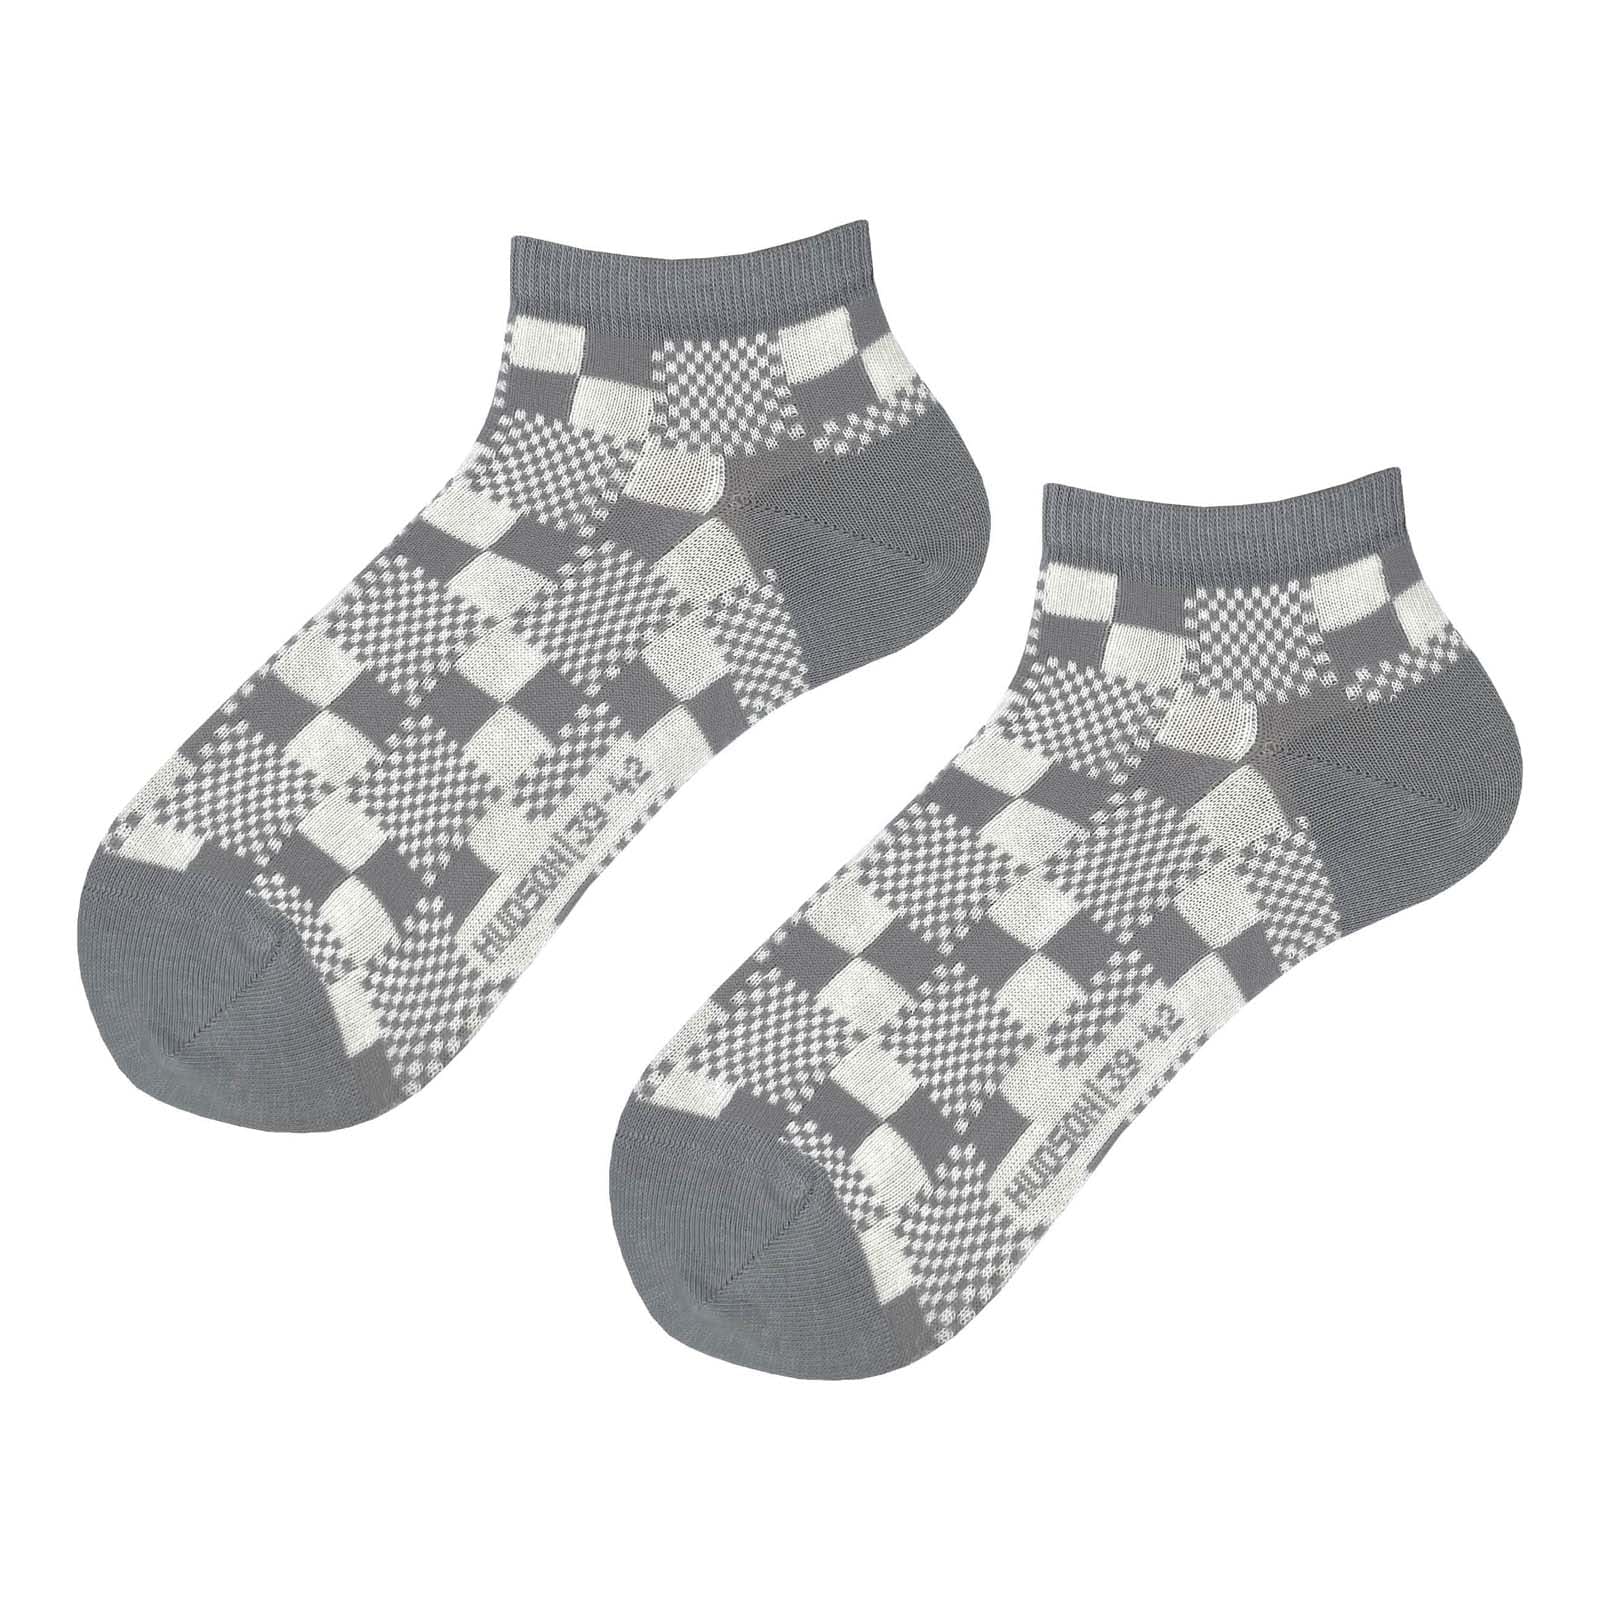 HUDSON Herren TRICKY -  43/46 - Herren Sneaker Socken mit auffälligem Schachbrett-Muster - Silber (Grau)